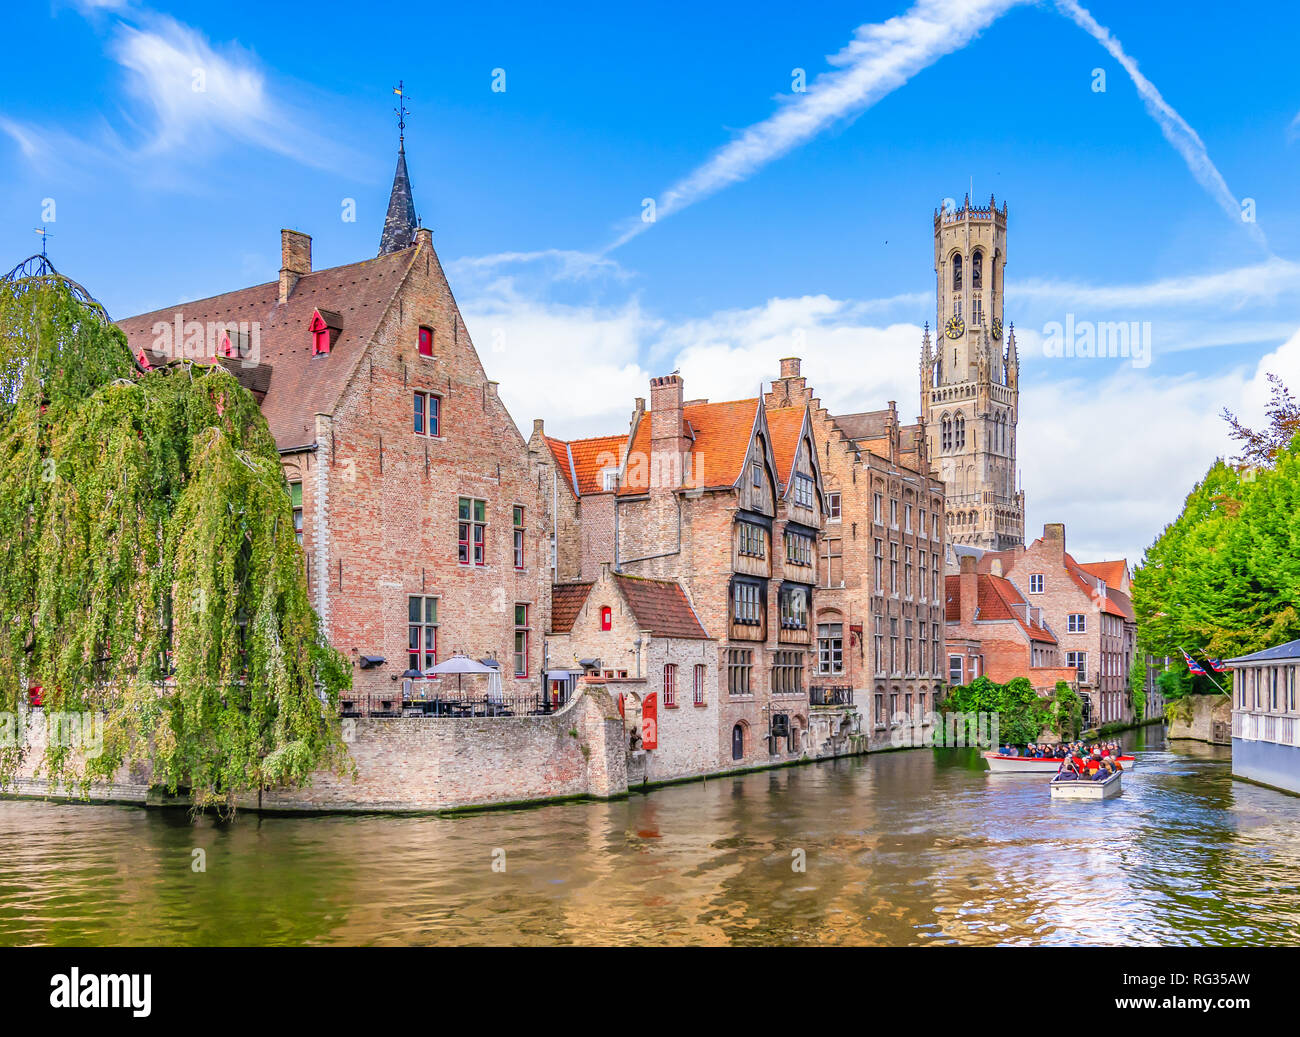 Beliebter Aussichtspunkt im Stadtzentrum mit traditionellen Backsteingebäude am Kanal in Brügge, Belgien. Stockfoto